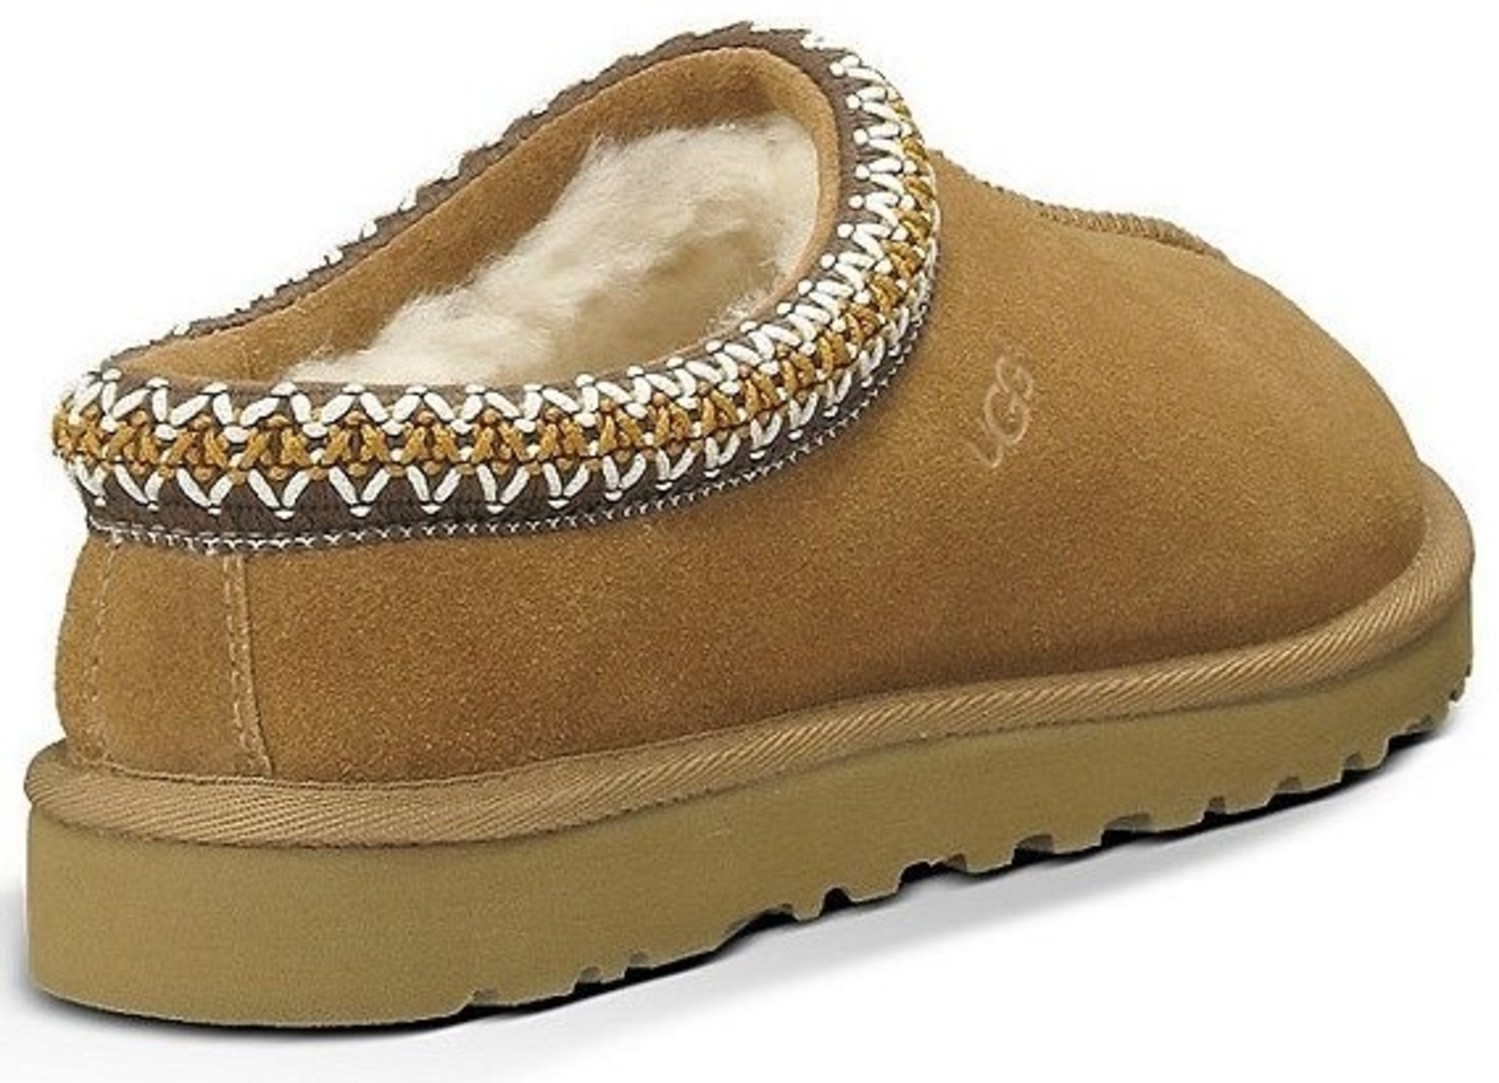 UGG Women's Tasman Chestnut Suede Slipper - Continental Shoes